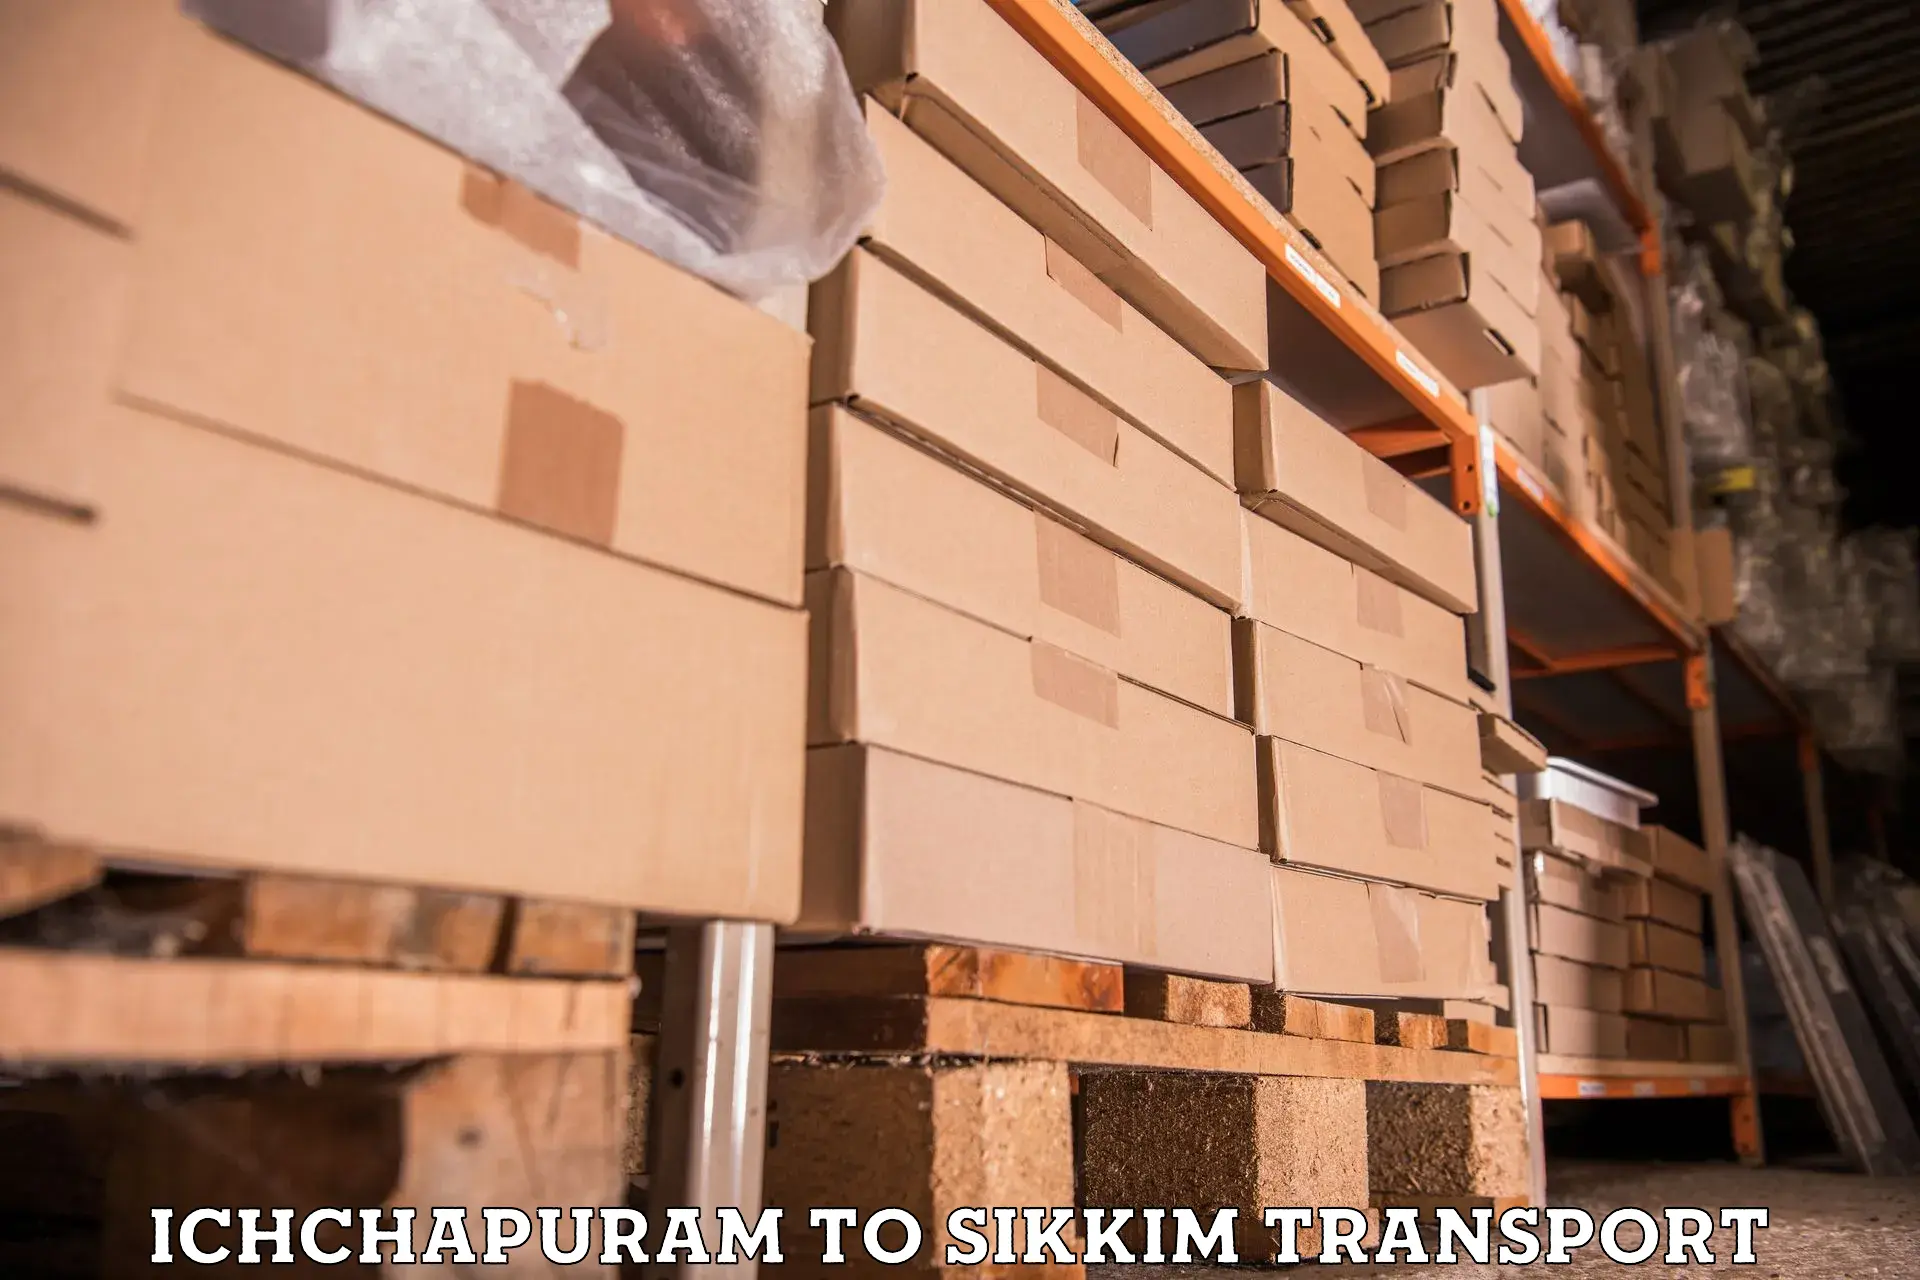 Nearest transport service Ichchapuram to Sikkim